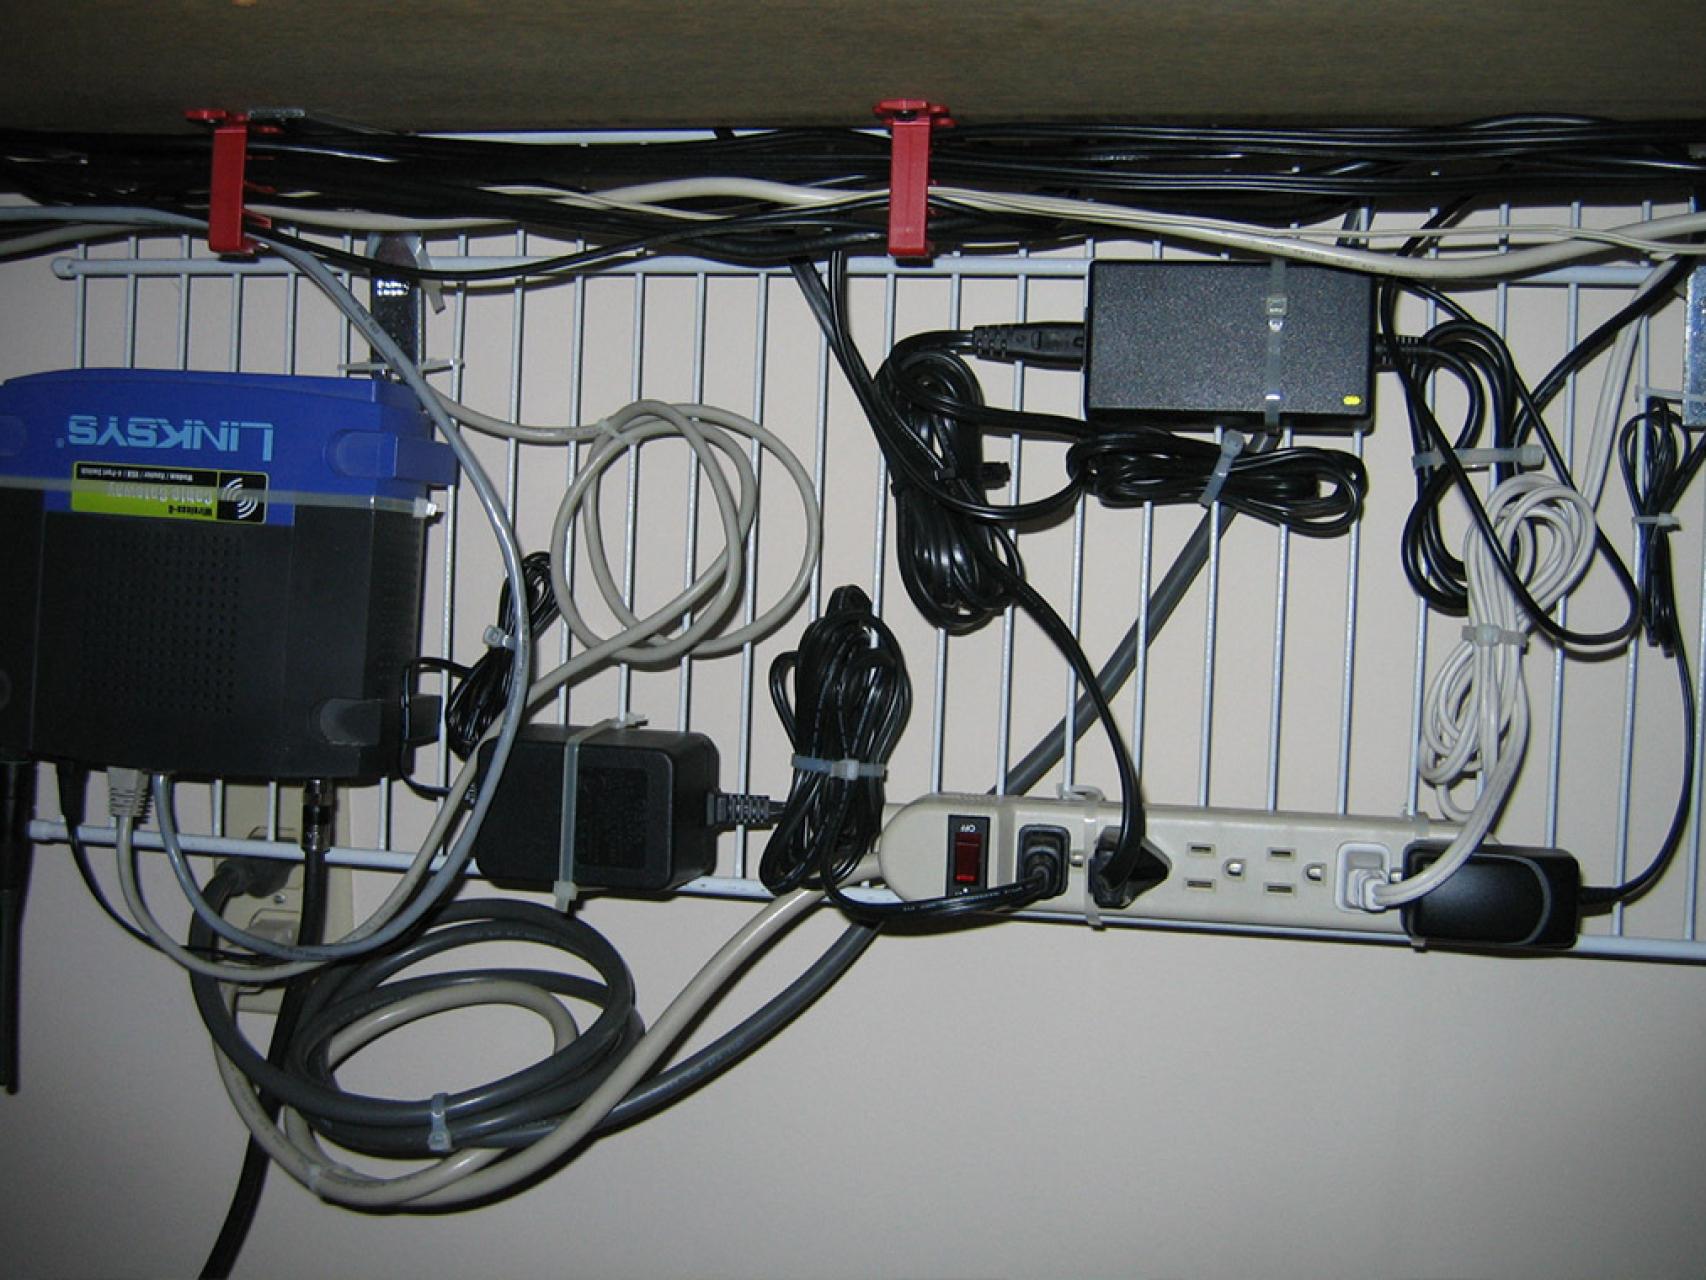 Ordena Cables Adhesivo 6 Unidades